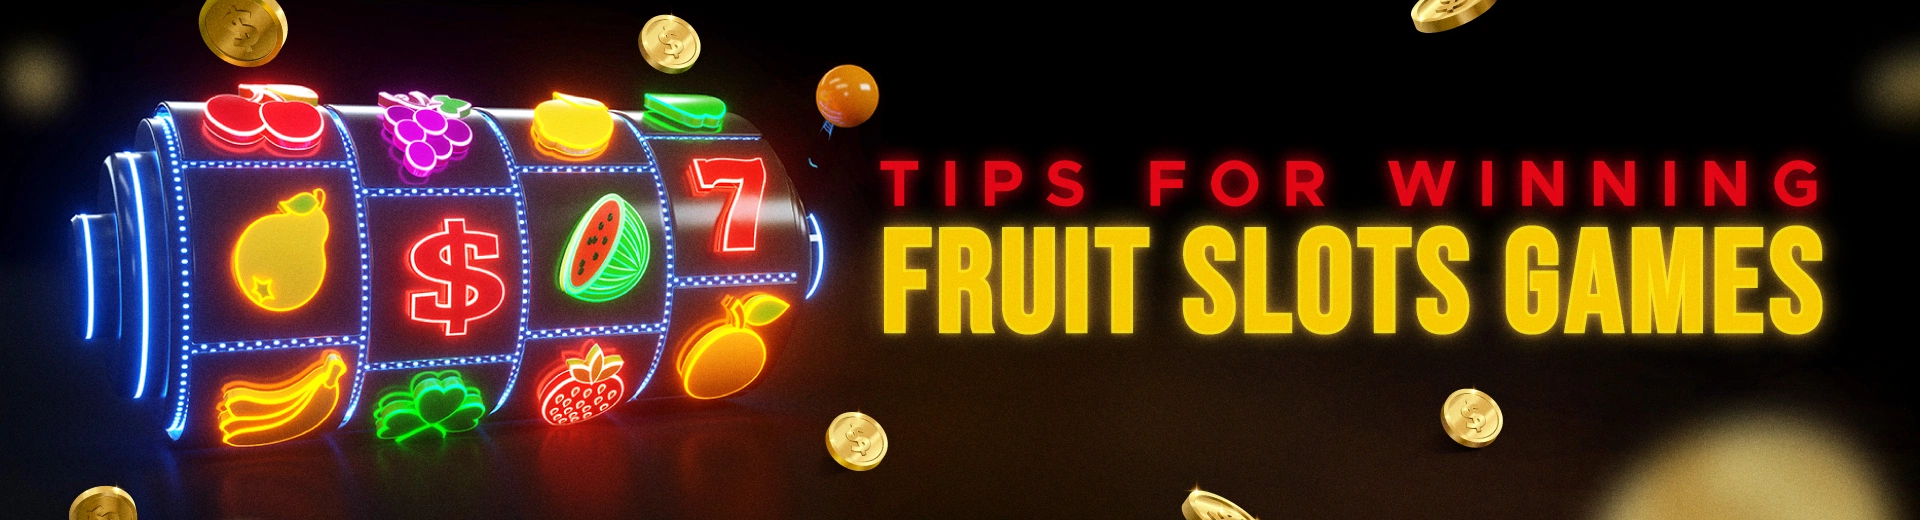 How to Play Fruit Machine Games Online - OKBET live casino